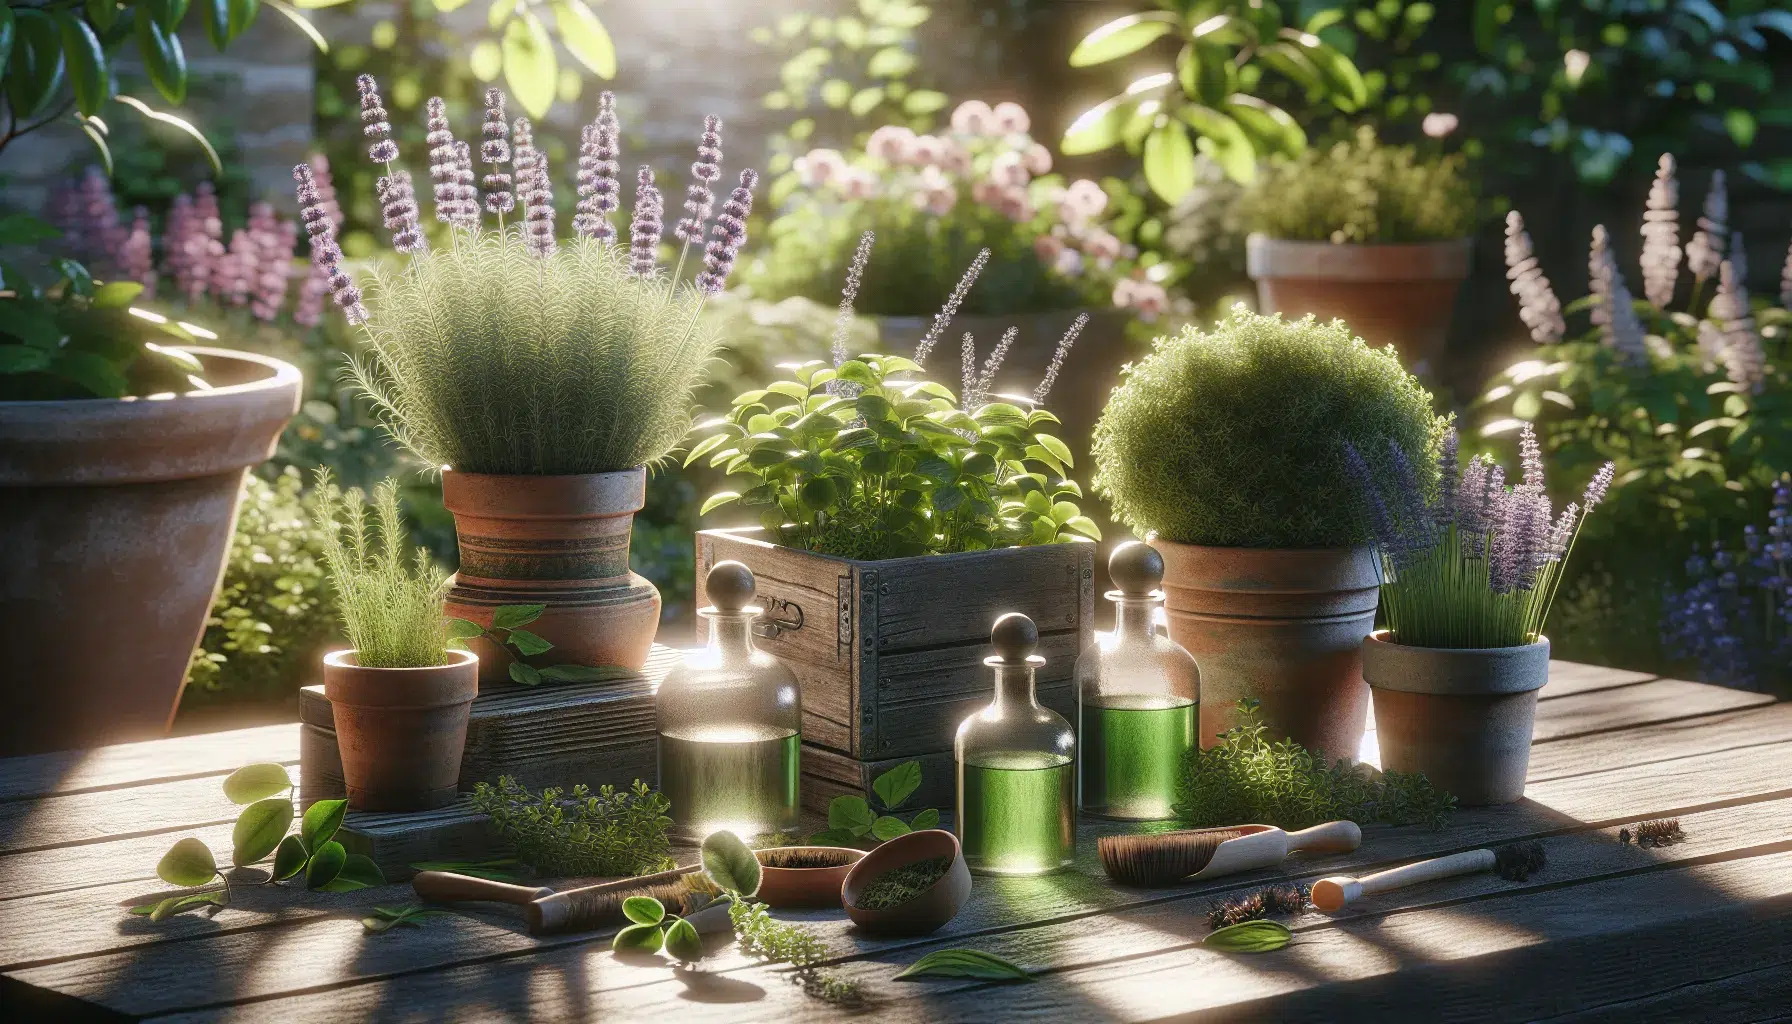 Imagen de cuatro plantas aromáticas en macetas colocadas en un jardín soleado, utilizadas para crear perfumes naturales en el exterior.